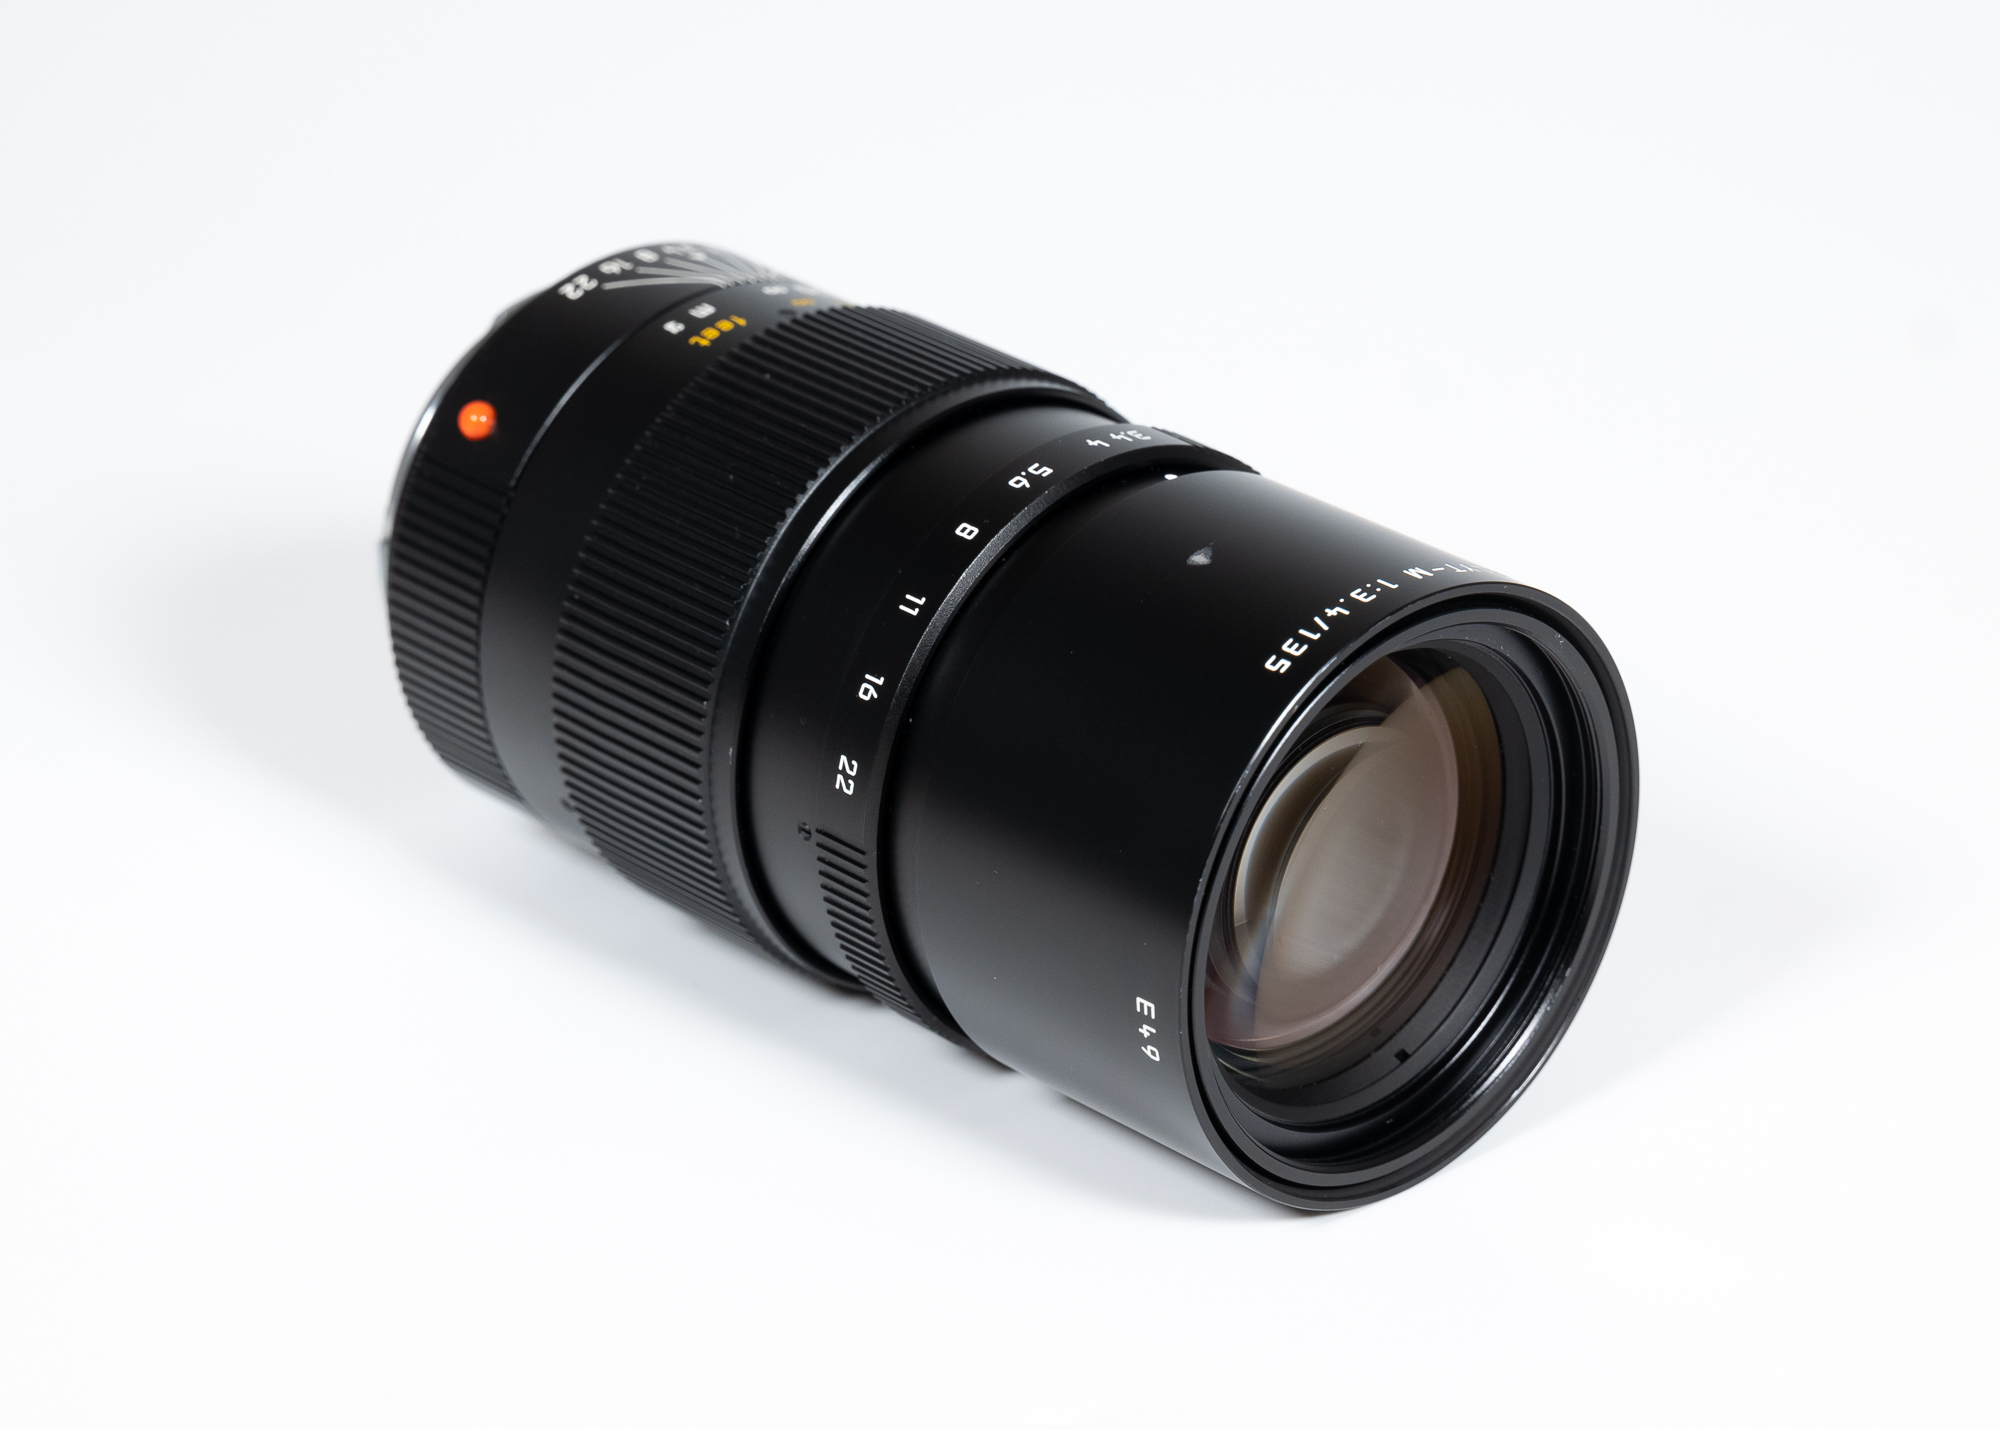 Leica APO-Telyt-M 1:3,4/135mm  11889SH